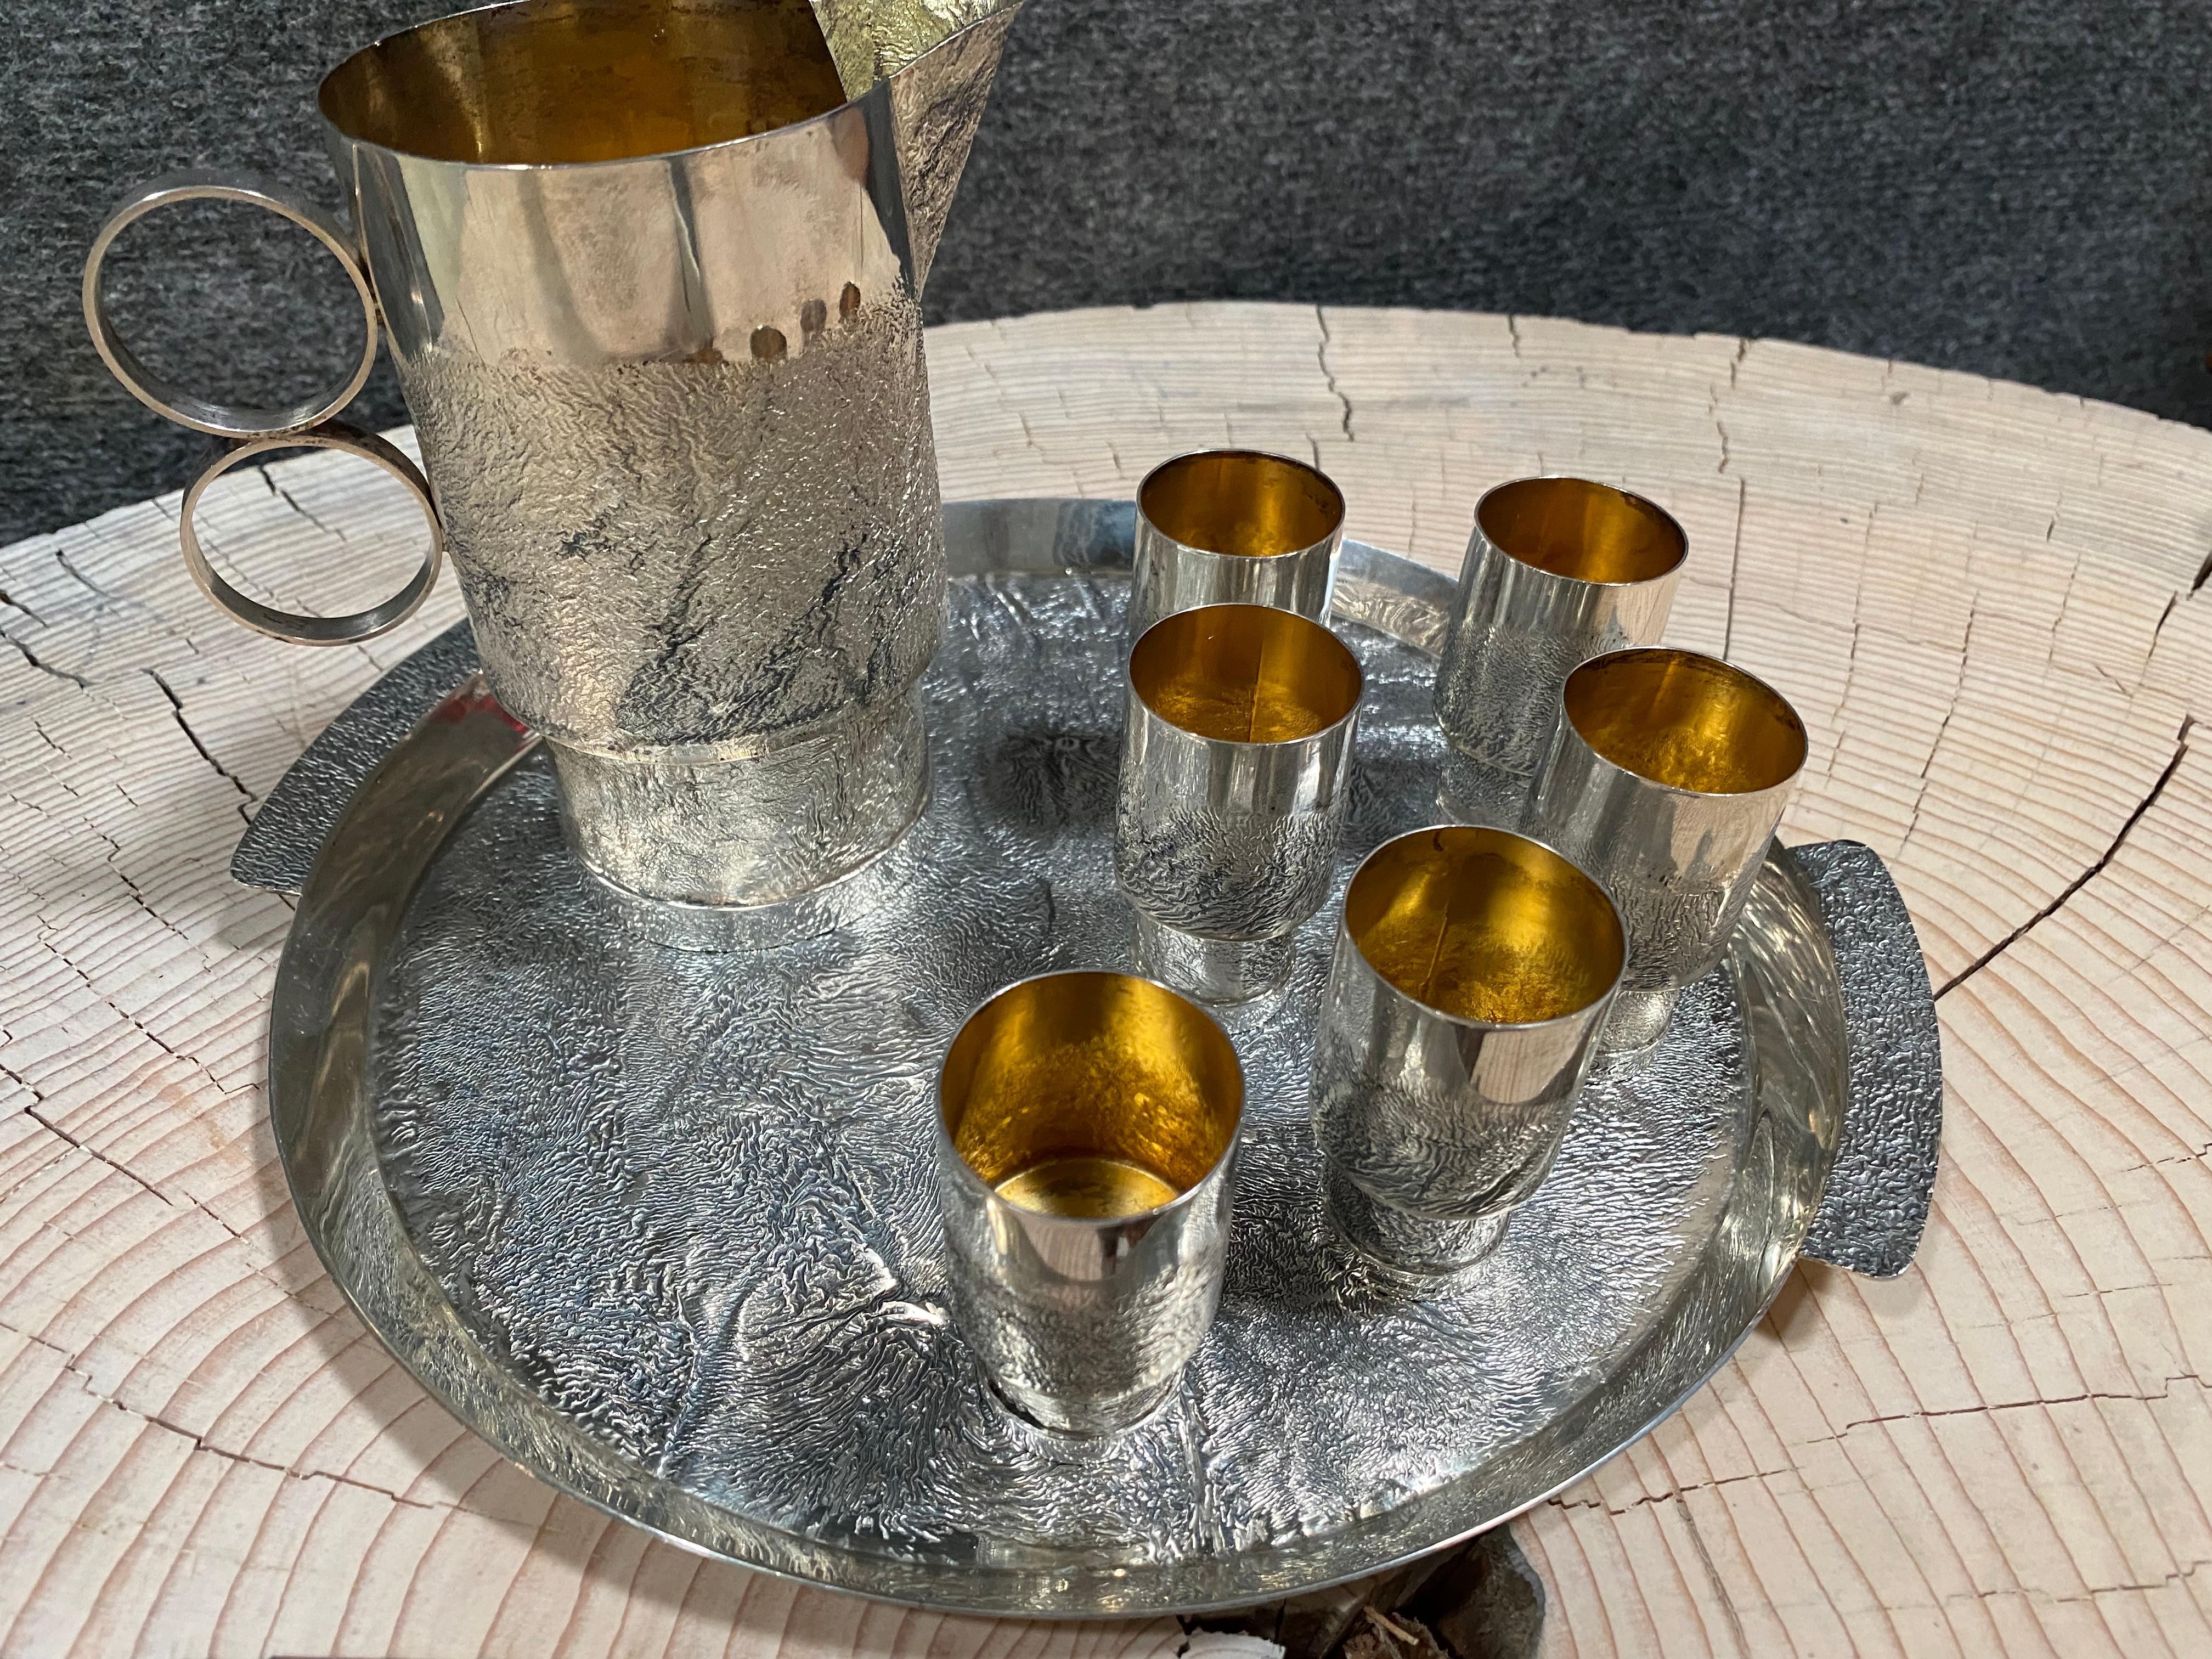 813 Silber Handmade Finnland 1974-75 Pekka Turtiainen Design Wodka Set.
Die Innenseiten der Gegenstände sind vergoldet.
Vintage-Satz aus Silber 
Ein echter Blickfang, der Mittelpunkt der Party. Das Cocktail-Set spiegelt den finnischen Geist von Eis